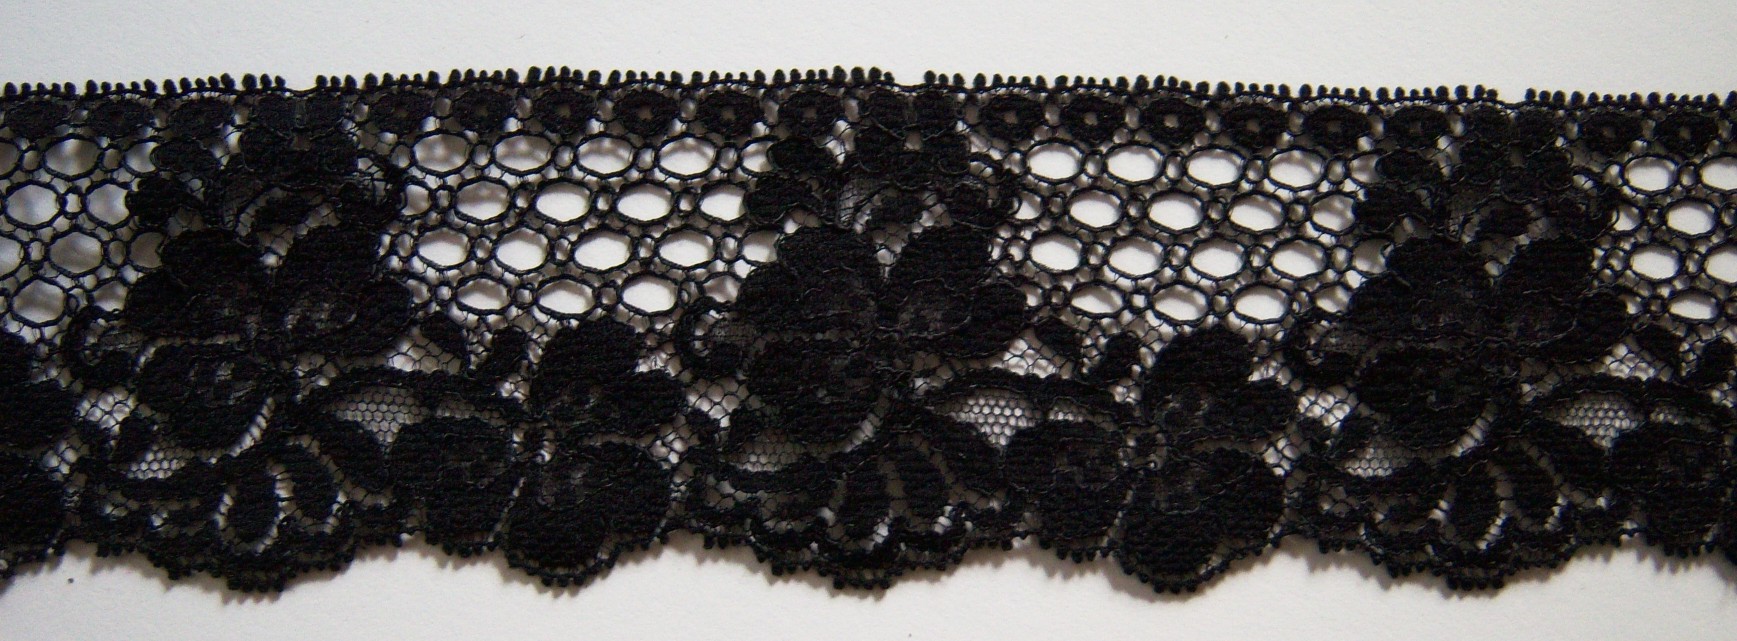 Black 2" Nylon Lace